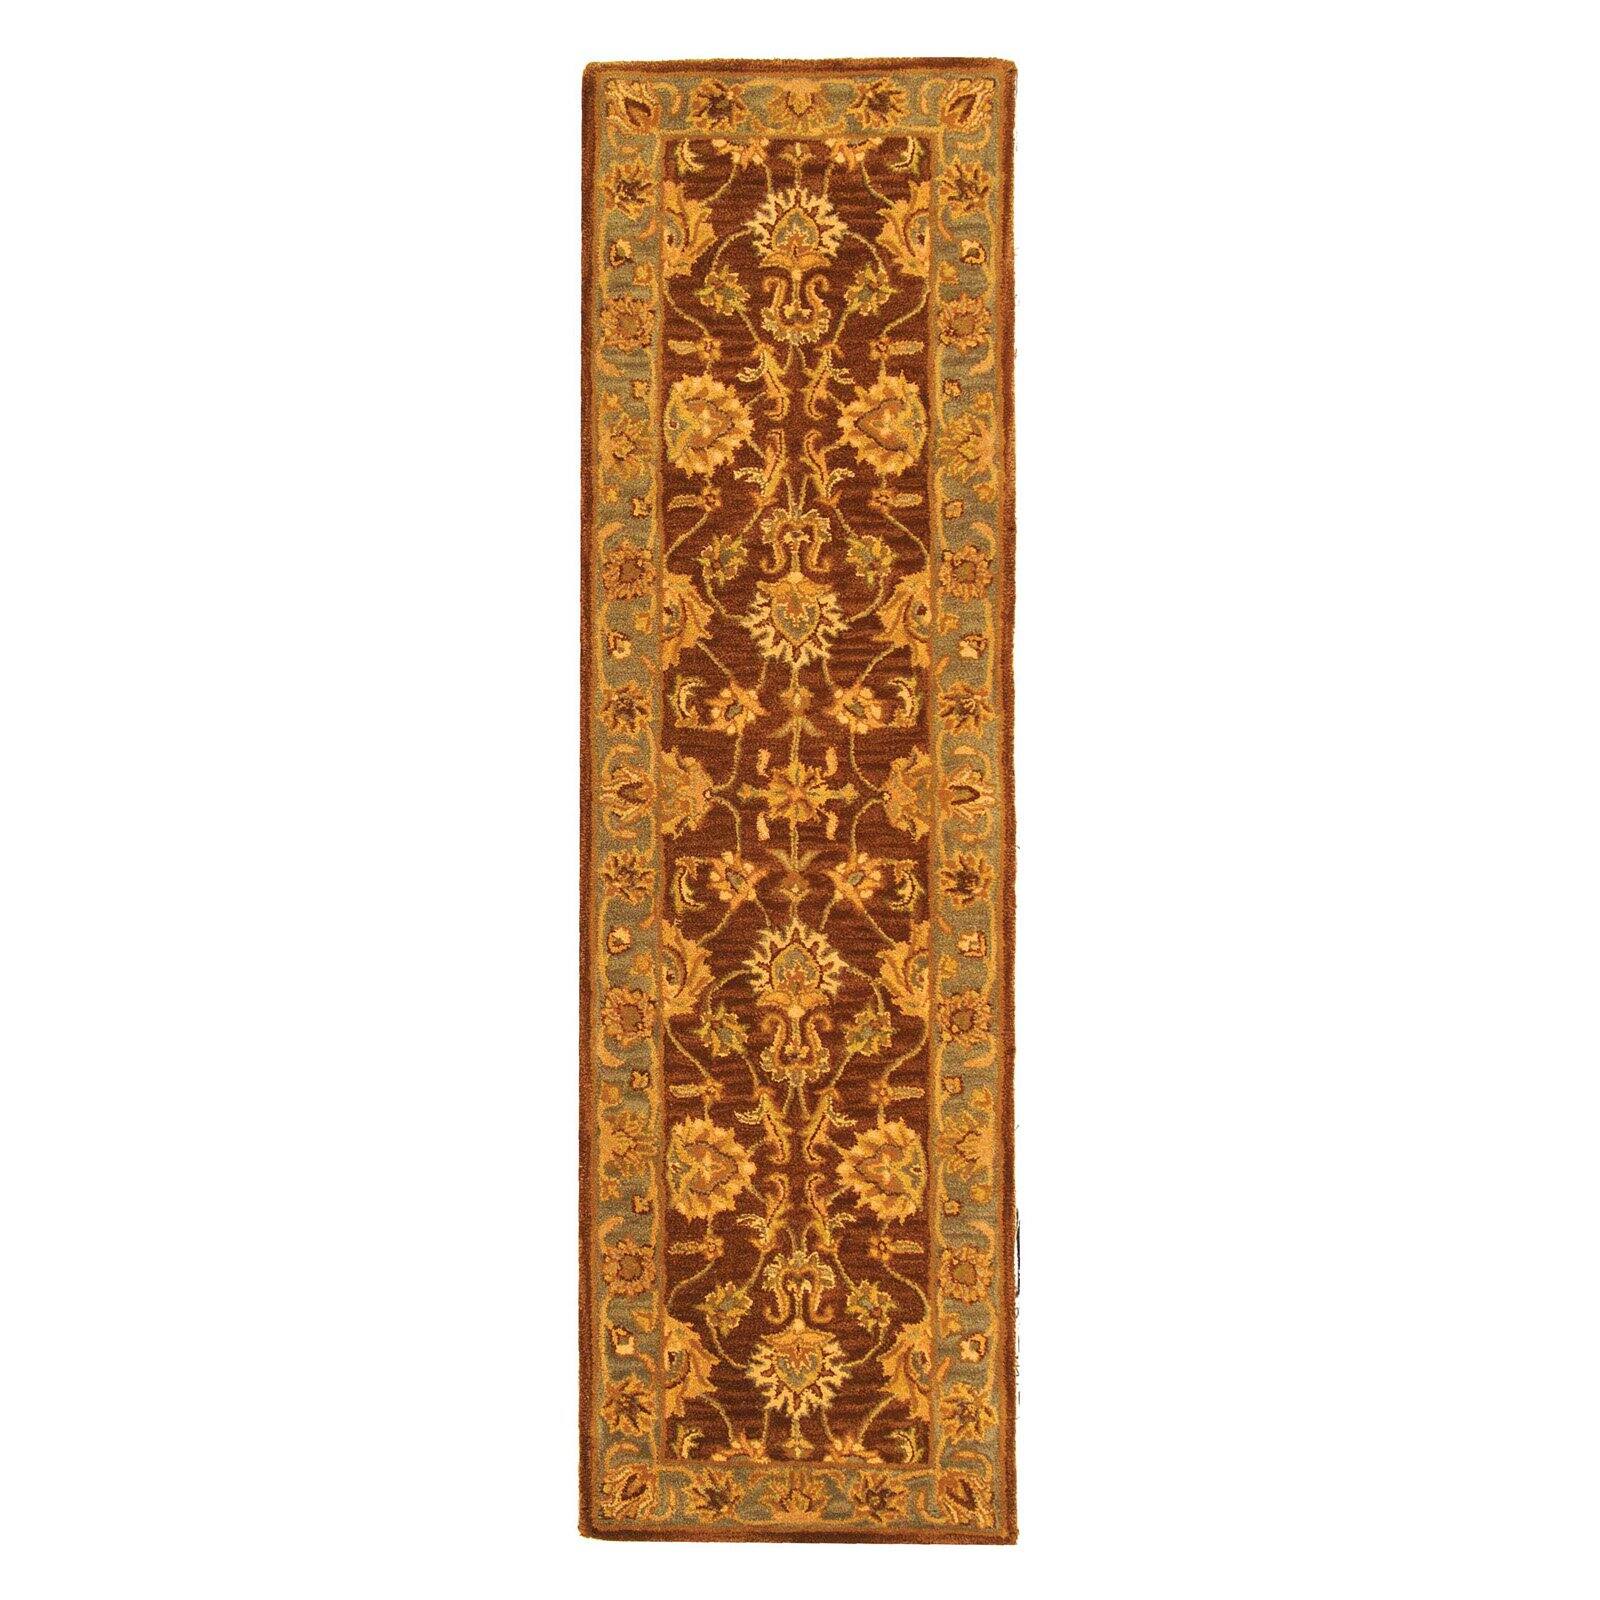 SAFAVIEH Heritage Regis Traditional Wool Area Rug, Brown/Blue, 2' x 3' - image 3 of 9